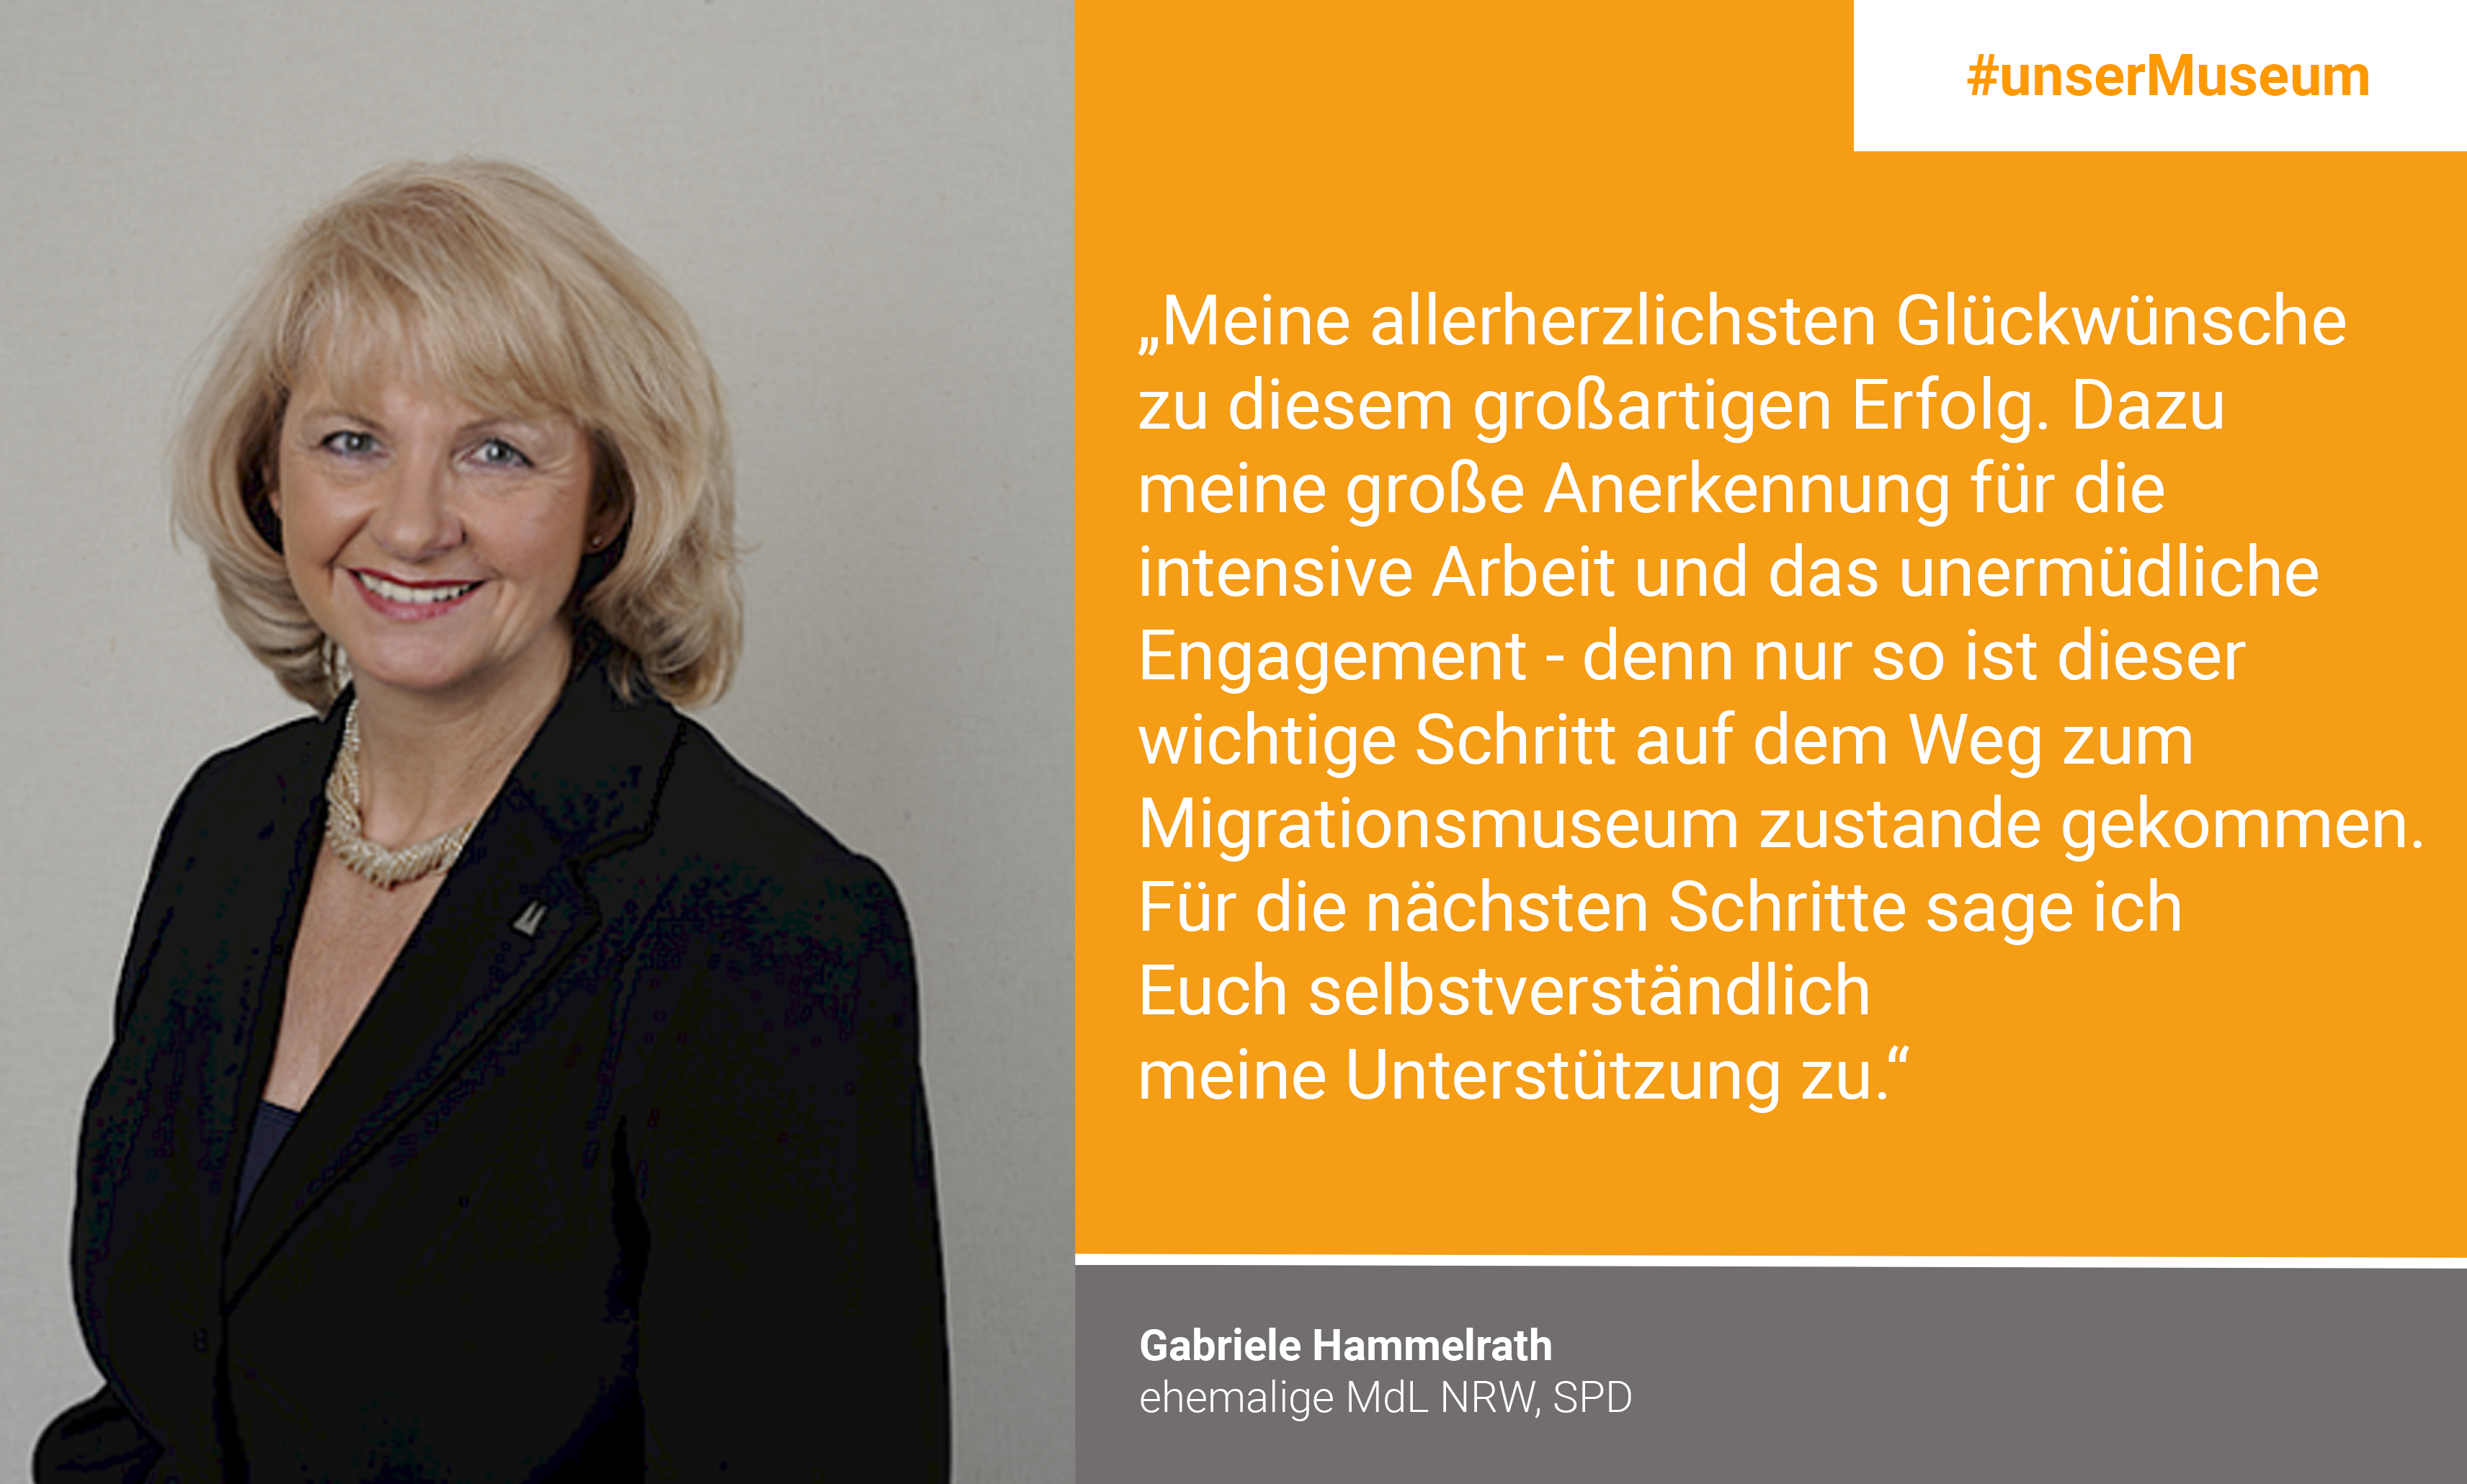 Gabriele Hammelrath, Ehemalige MdL NRW (SPD): "Meine allerherzlichsten Glückwünsche zu diesem großartigen Erfolg. Dazu meine große Anerkennung für die intensive Arbeit und das unermüdliche Engagement – denn nur so ist dieser wichtige Schritt auf dem Weg zum Migrationsmuseum zustande gekommen. Für die nächsten Schritte sage ich Euch selbstverständlich meine Unterstützung zu."